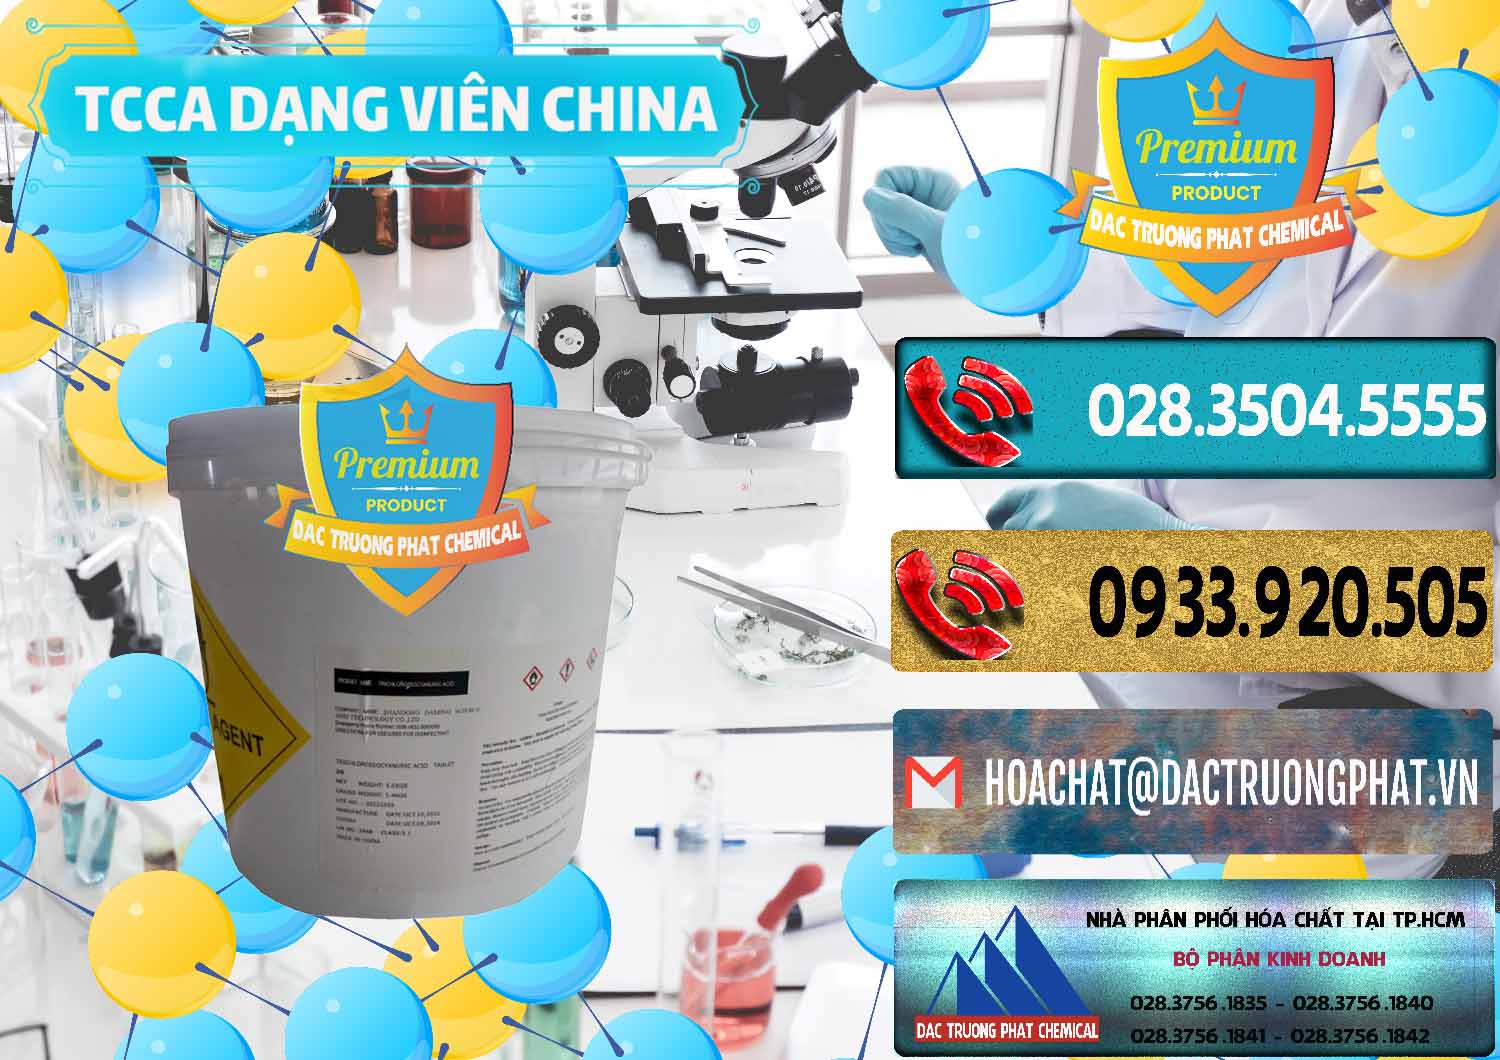 Cty chuyên kinh doanh và bán TCCA - Acid Trichloroisocyanuric Dạng Viên Thùng 5kg Trung Quốc China - 0379 - Đơn vị kinh doanh & phân phối hóa chất tại TP.HCM - hoachatdetnhuom.com